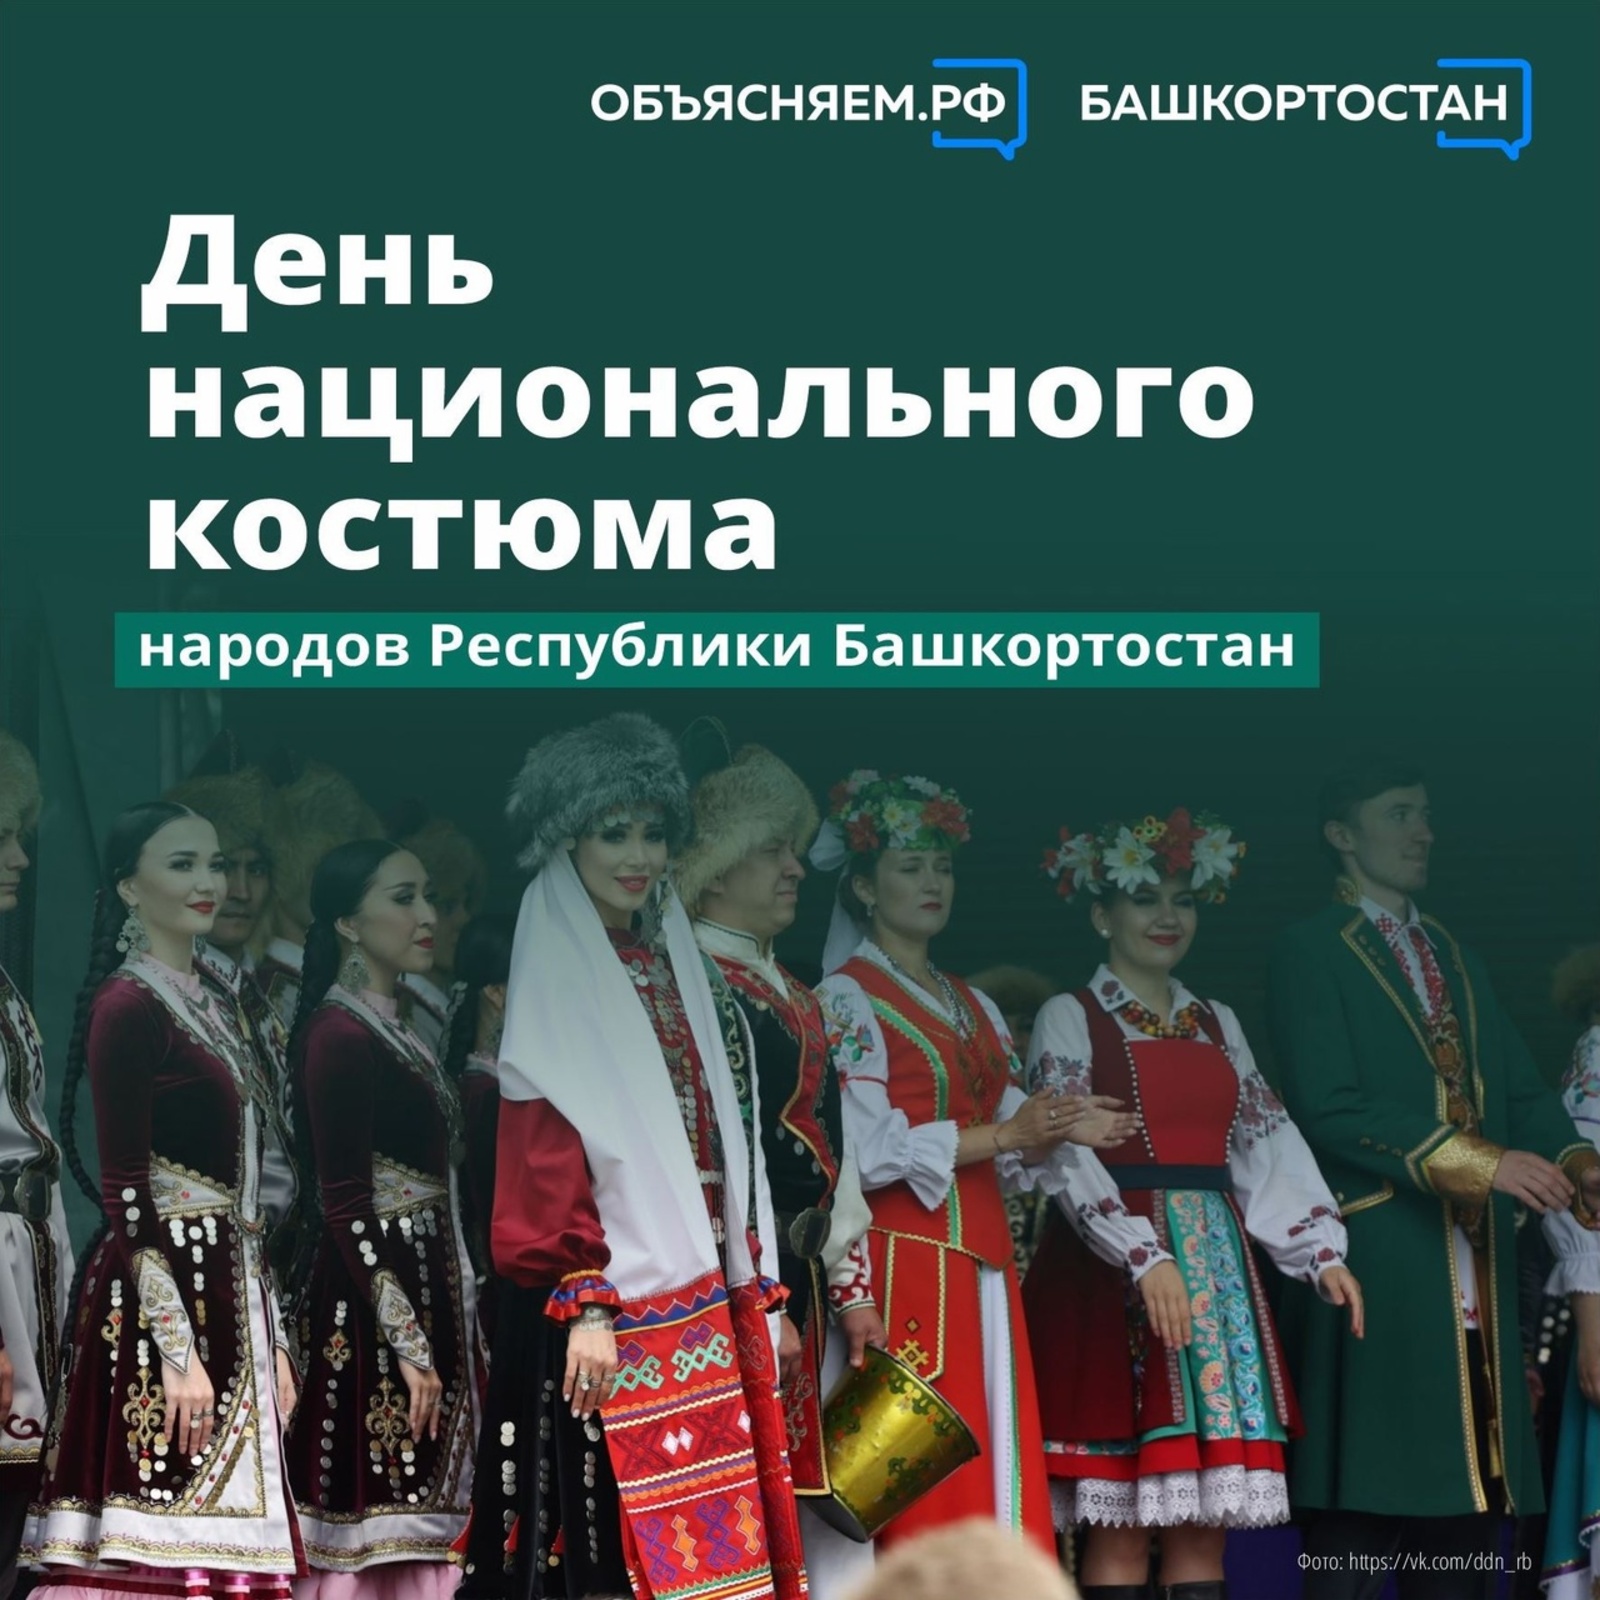 День национального костюма стартует в Башкирии!